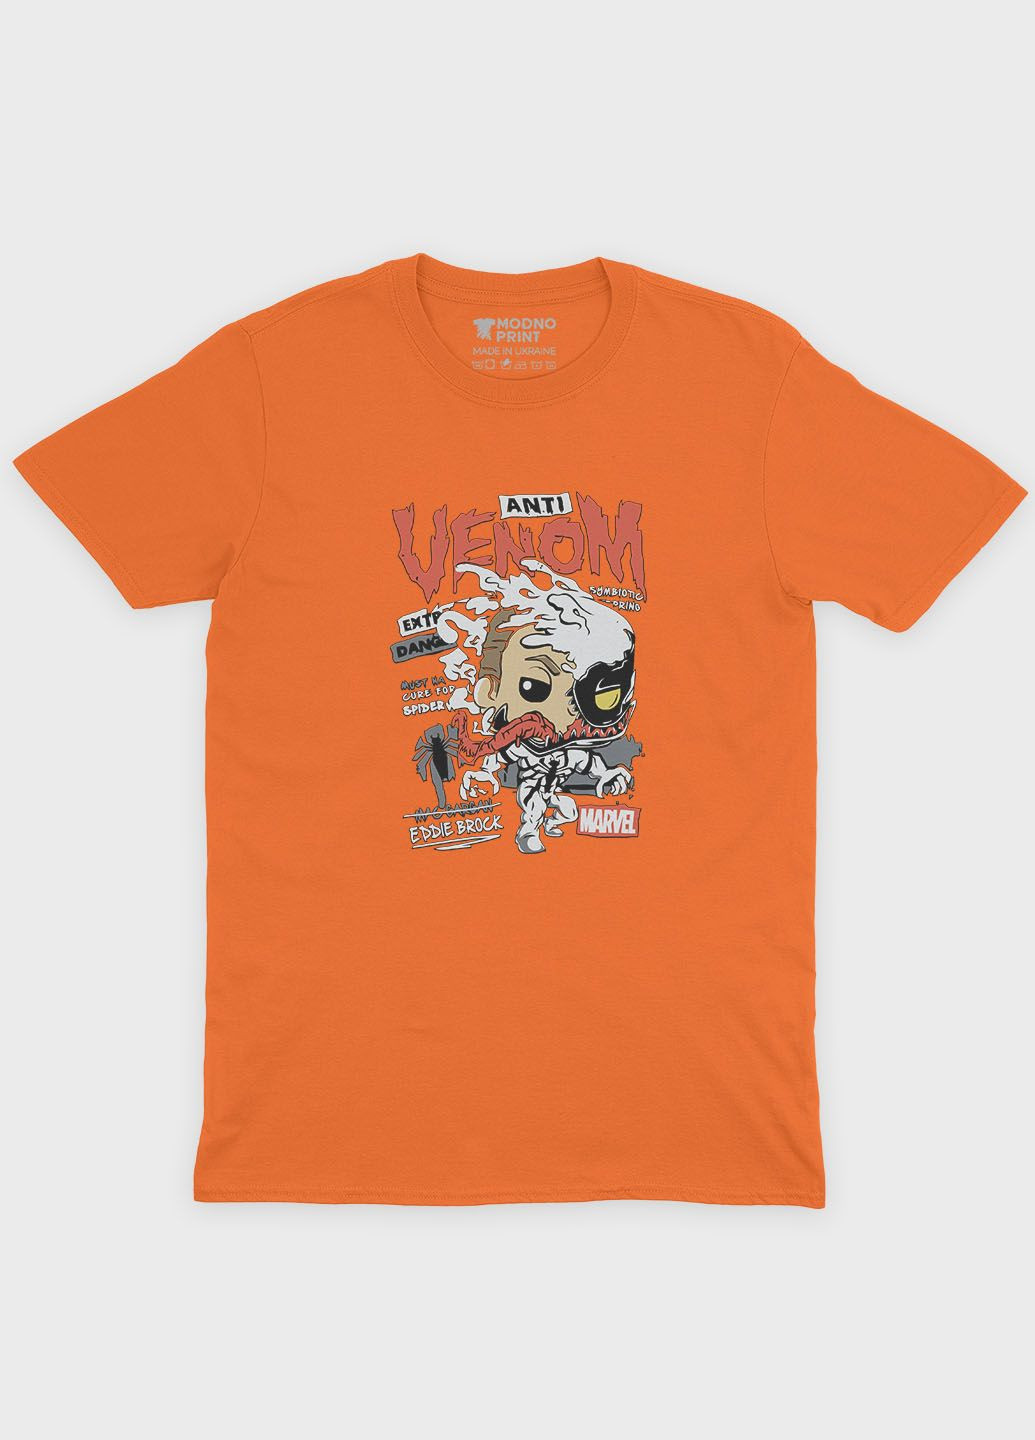 Помаранчева демісезонна футболка для хлопчика з принтом суперзлодія - веном (ts001-1-ora-006-013-018-b) Modno